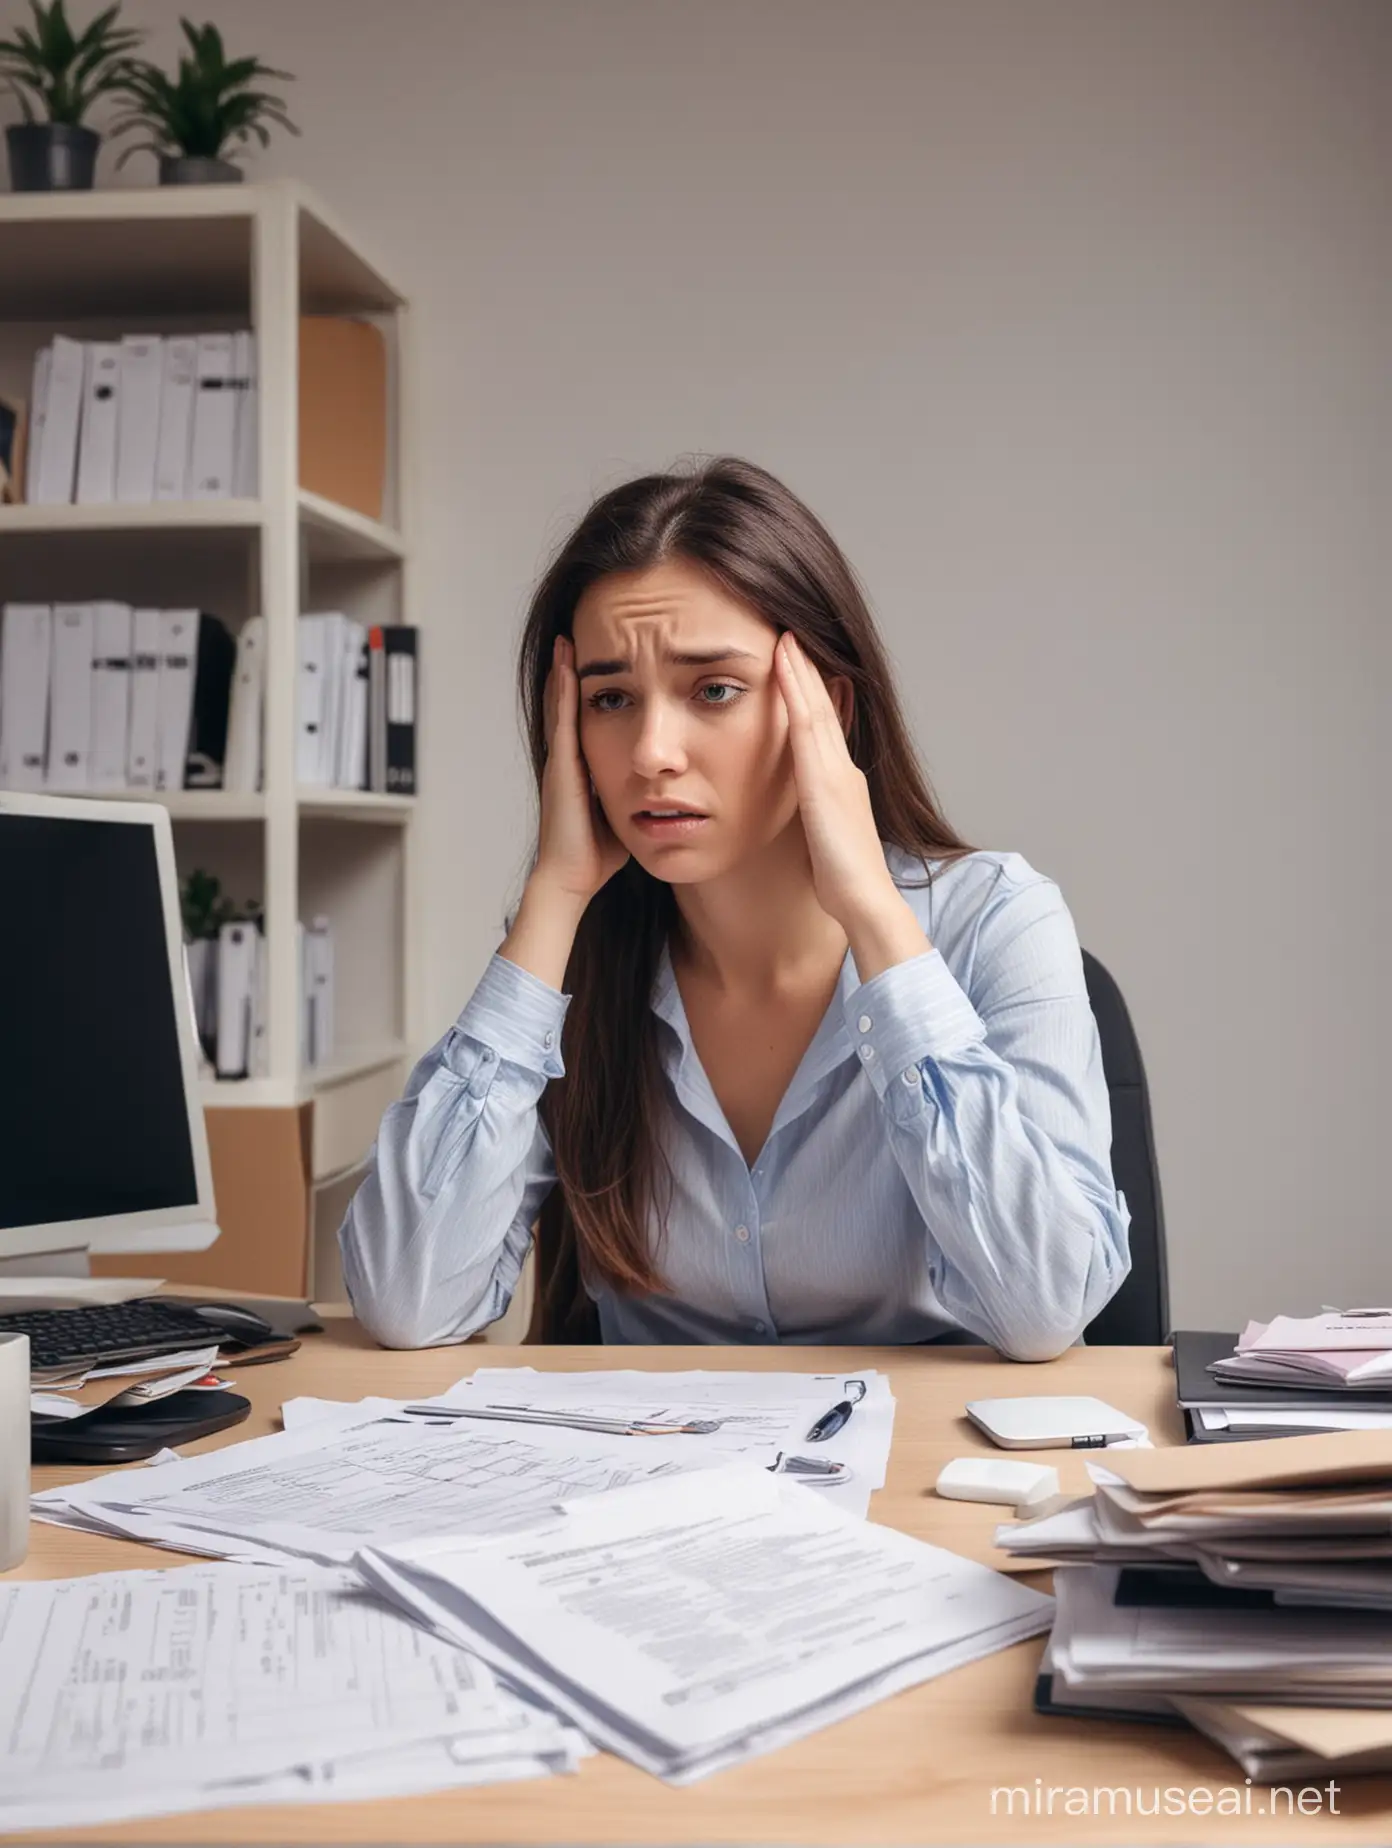 tjej sitter ensam på sitt kontor och är panik stressad 
med för mycket arbete 